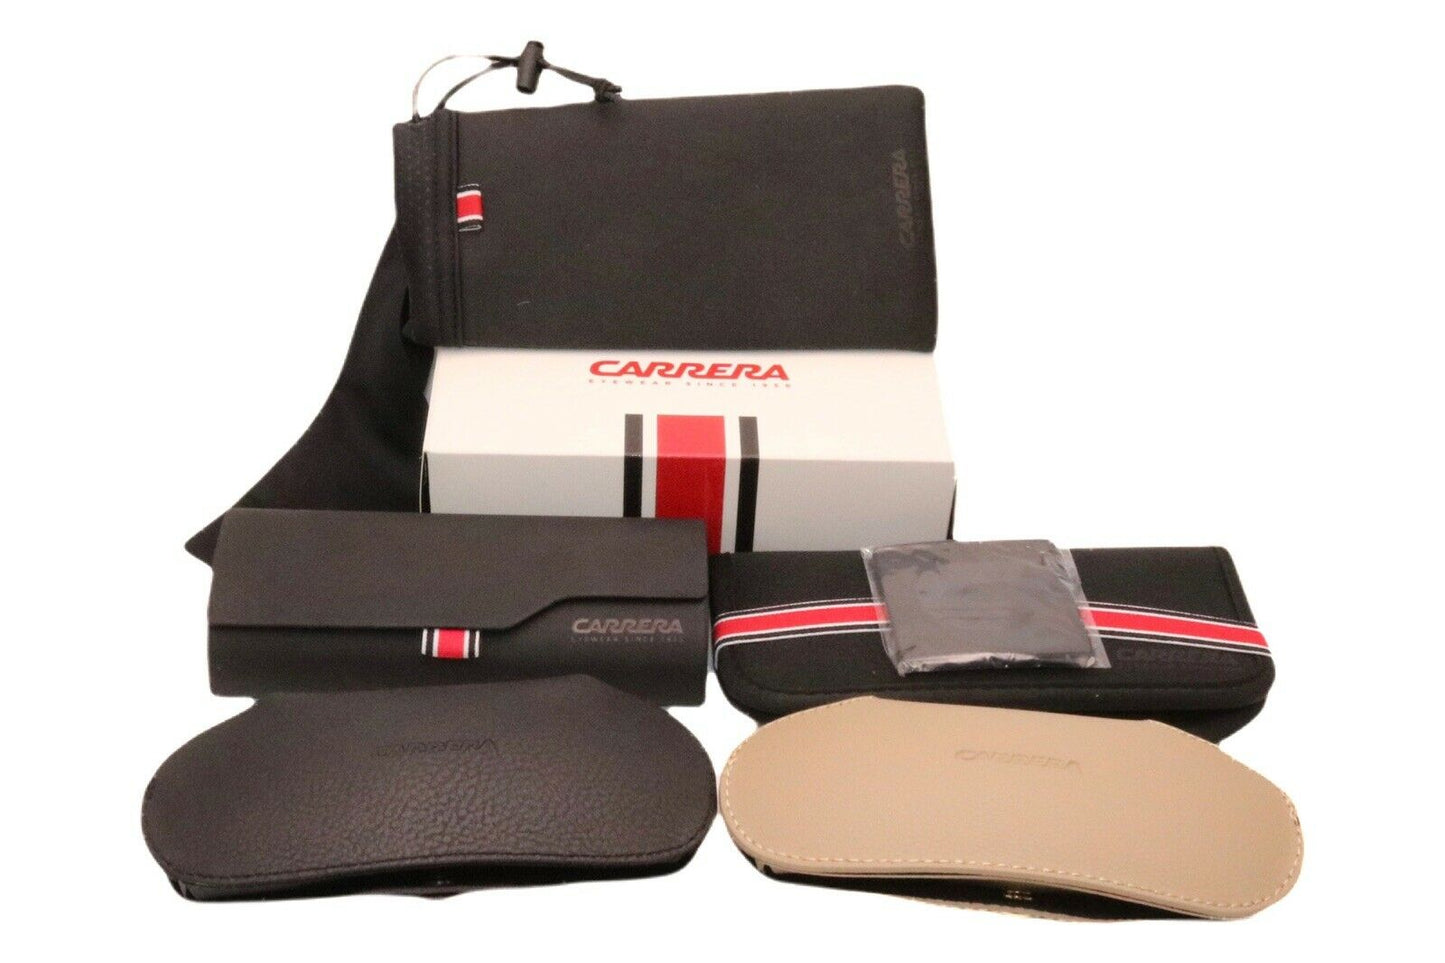 Carrera COOL65-0003 M9 64mm New Sunglasses